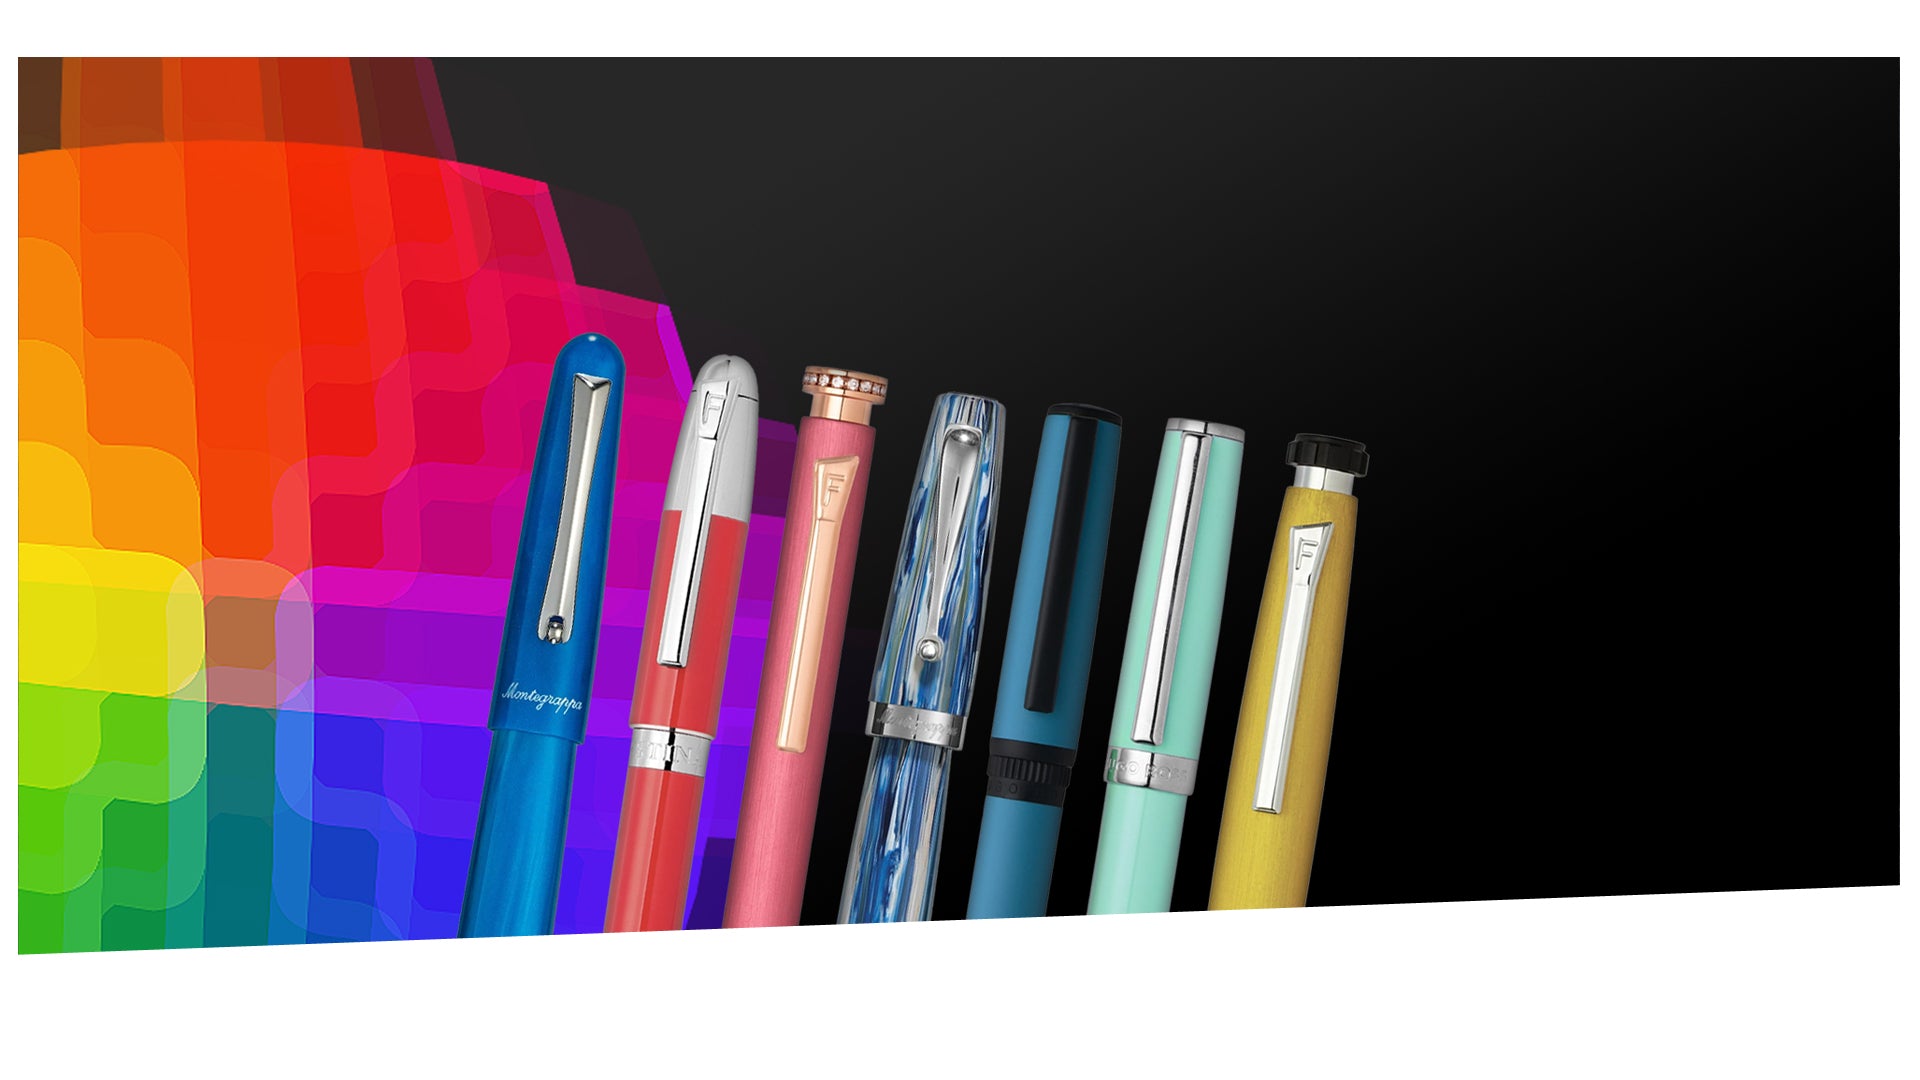 Edle Schreibgeräte in trendigen Farben